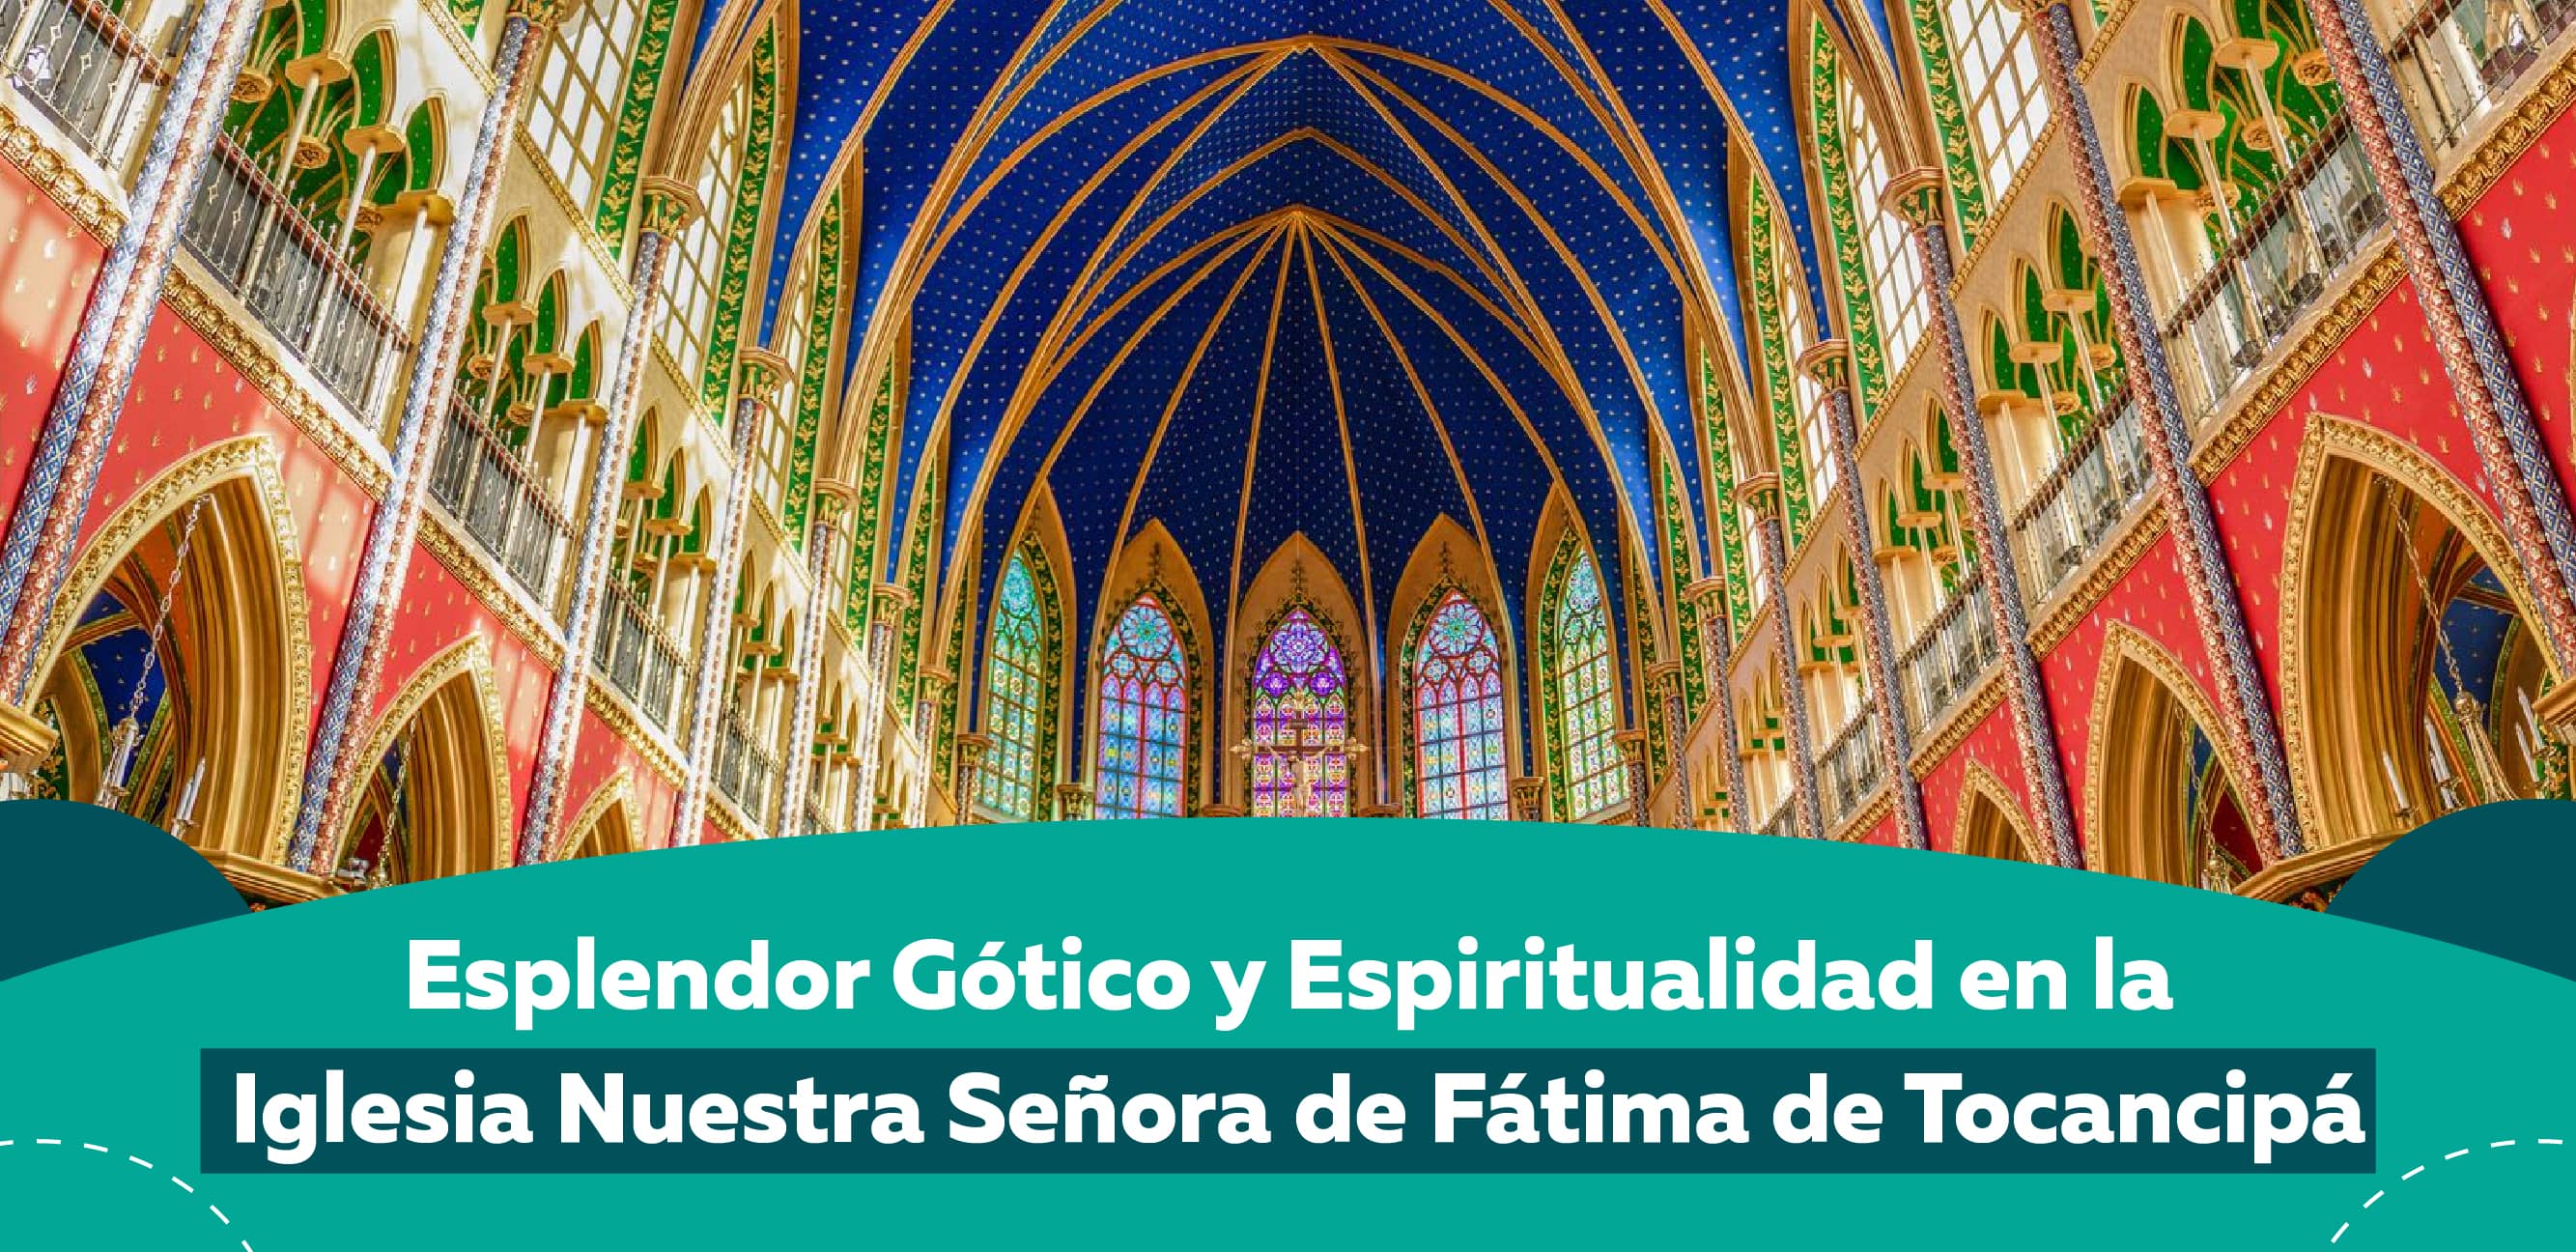 Esplendor Gótico y Espiritualidad en la Iglesia Nuestra Señora de Fátima de Tocancipá